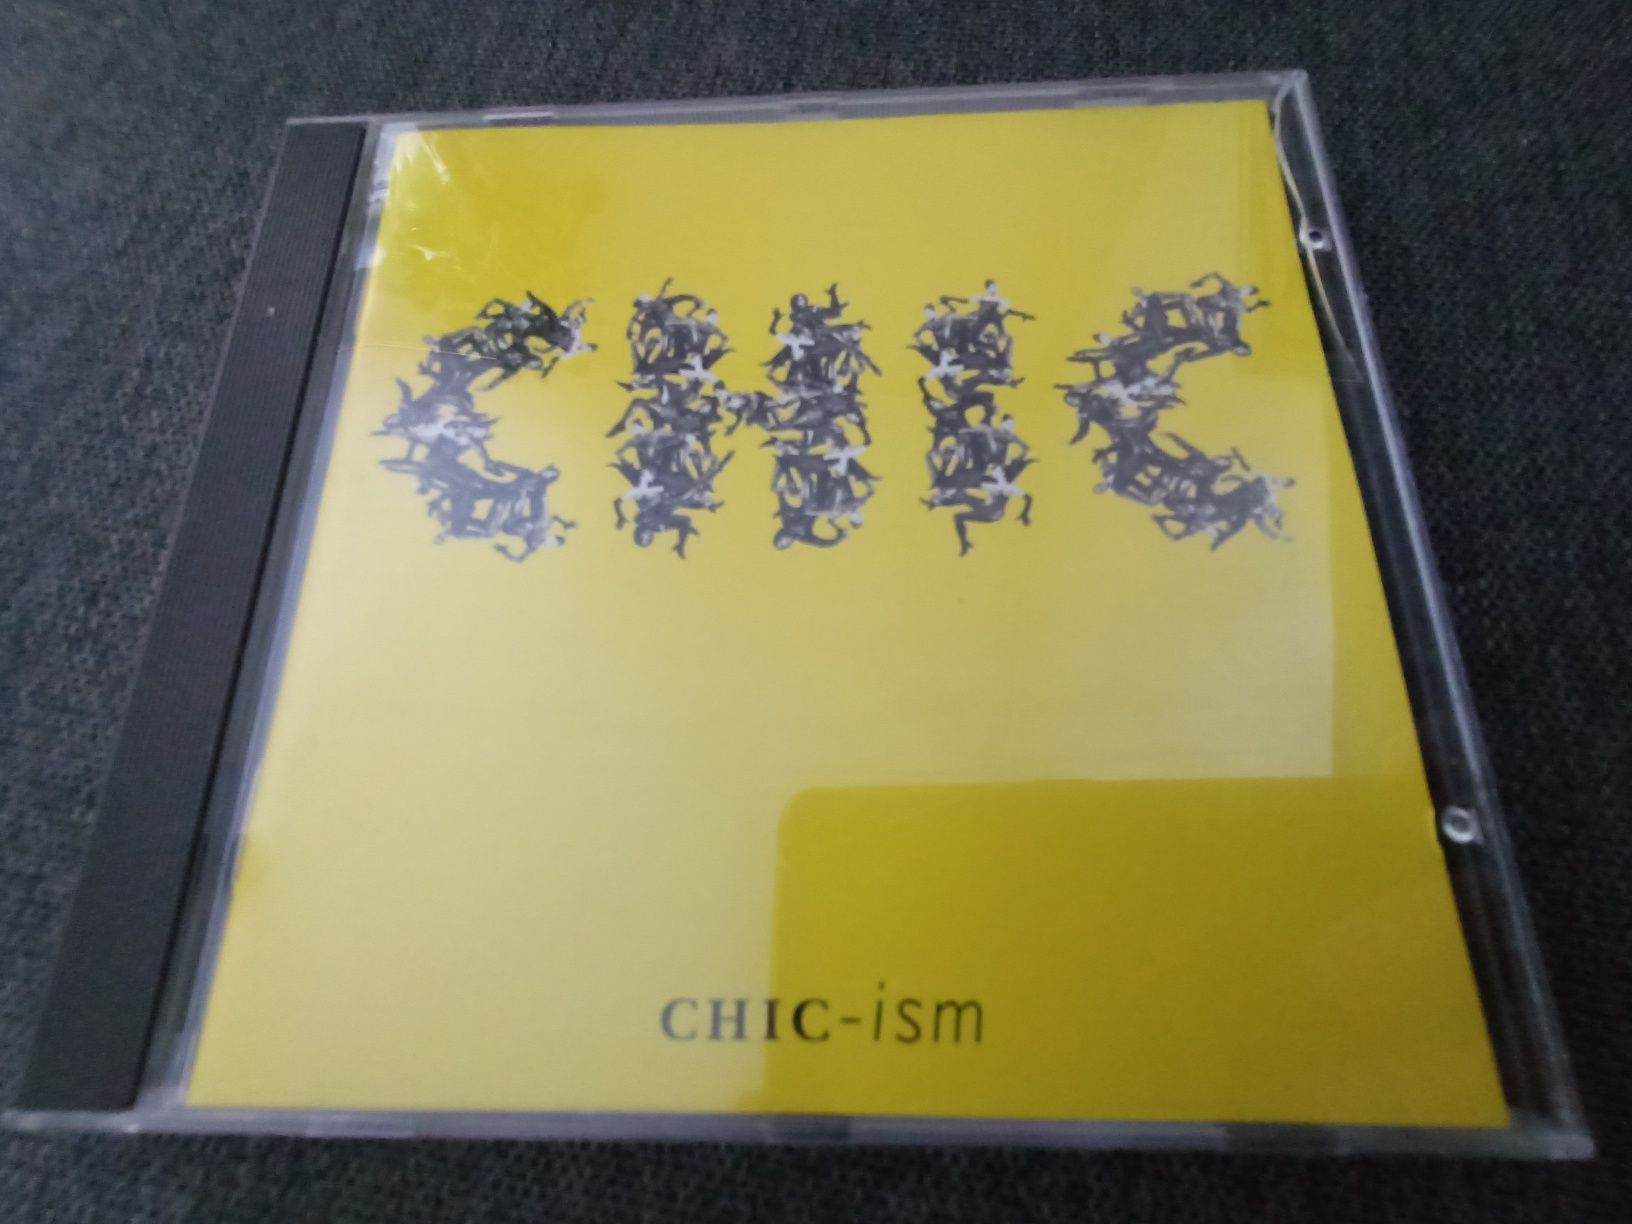 Chic - Chic-ism (vg+)